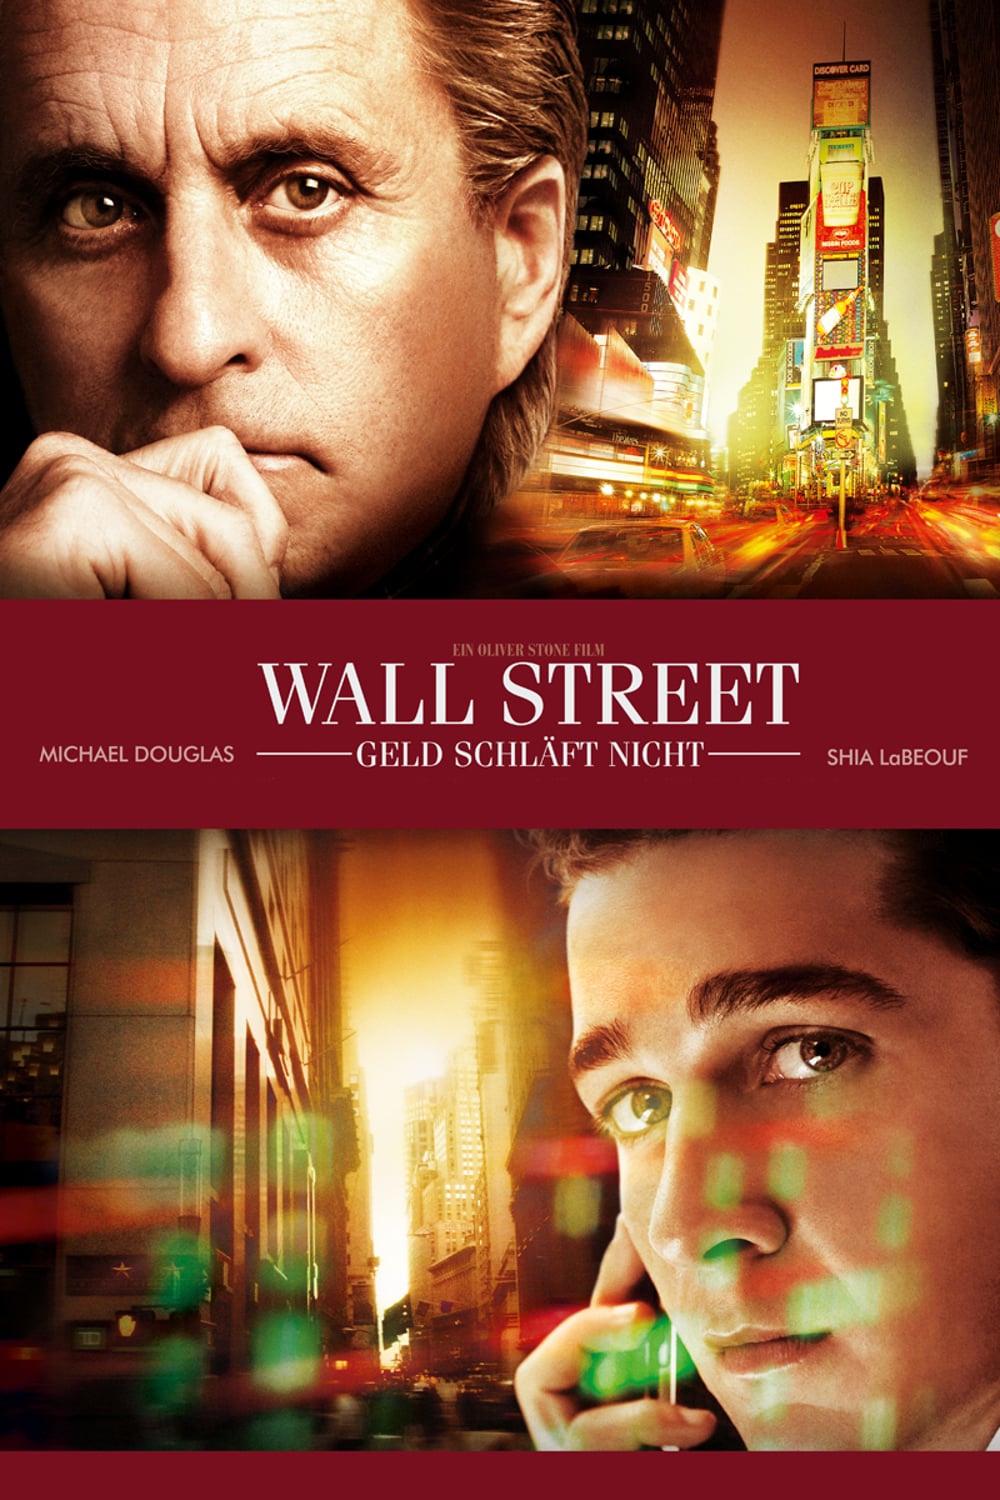 Plakat von "Wall Street - Geld schläft nicht"